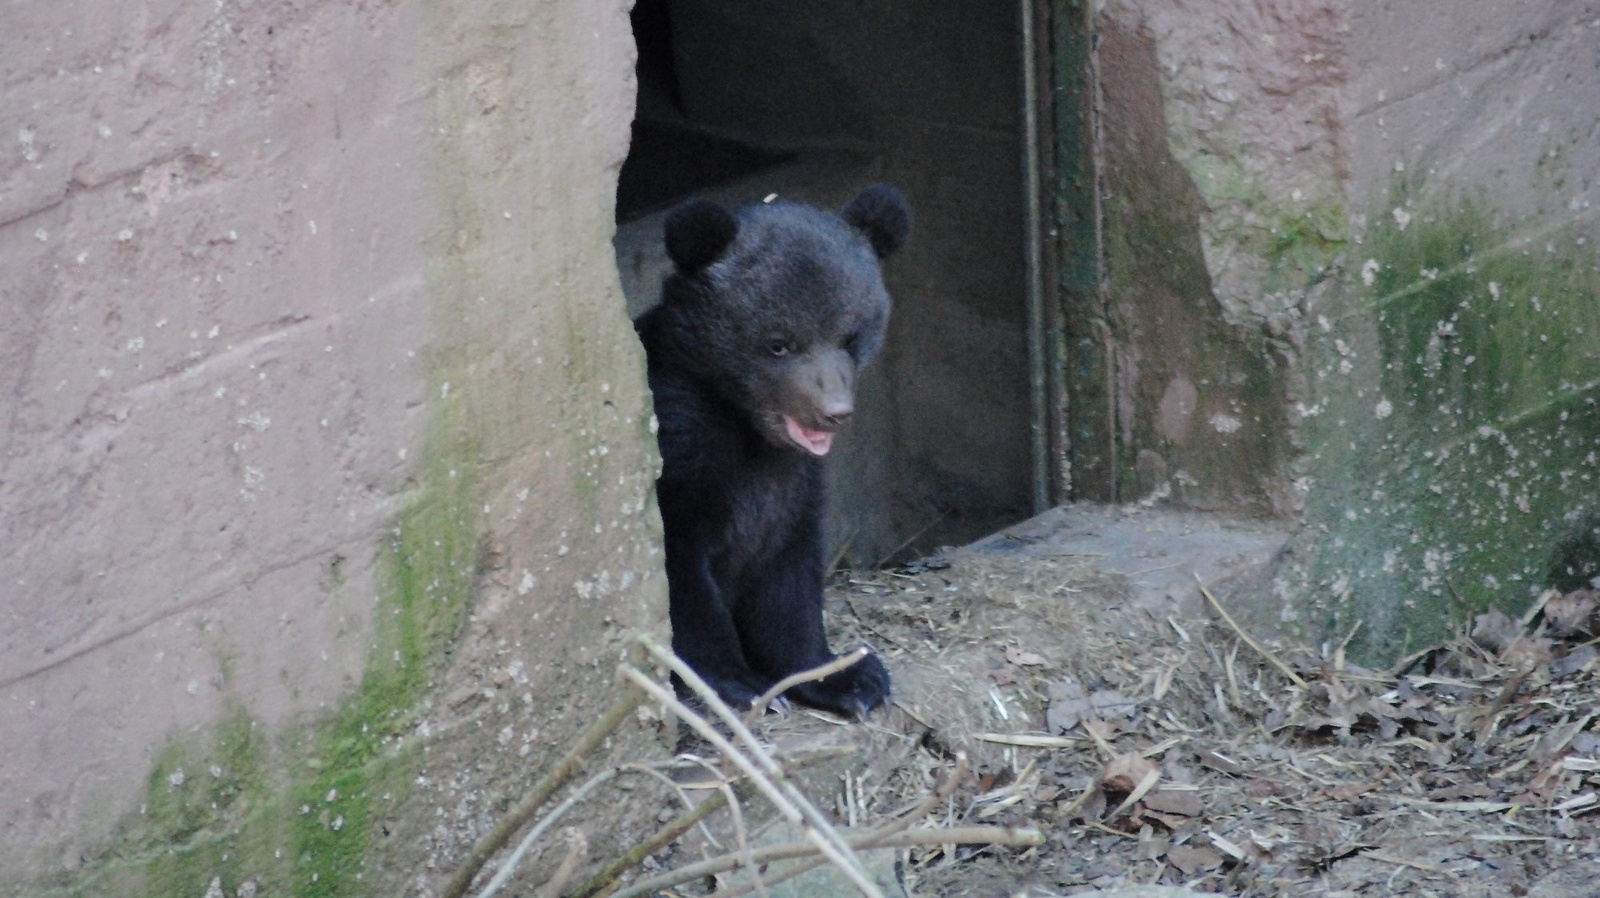 Så här såg det ut när en av de nya björnungarna på Skånes djurpark tittade ut från sitt ide för några dagar sedan. 					              Foto: Skånes djurpark